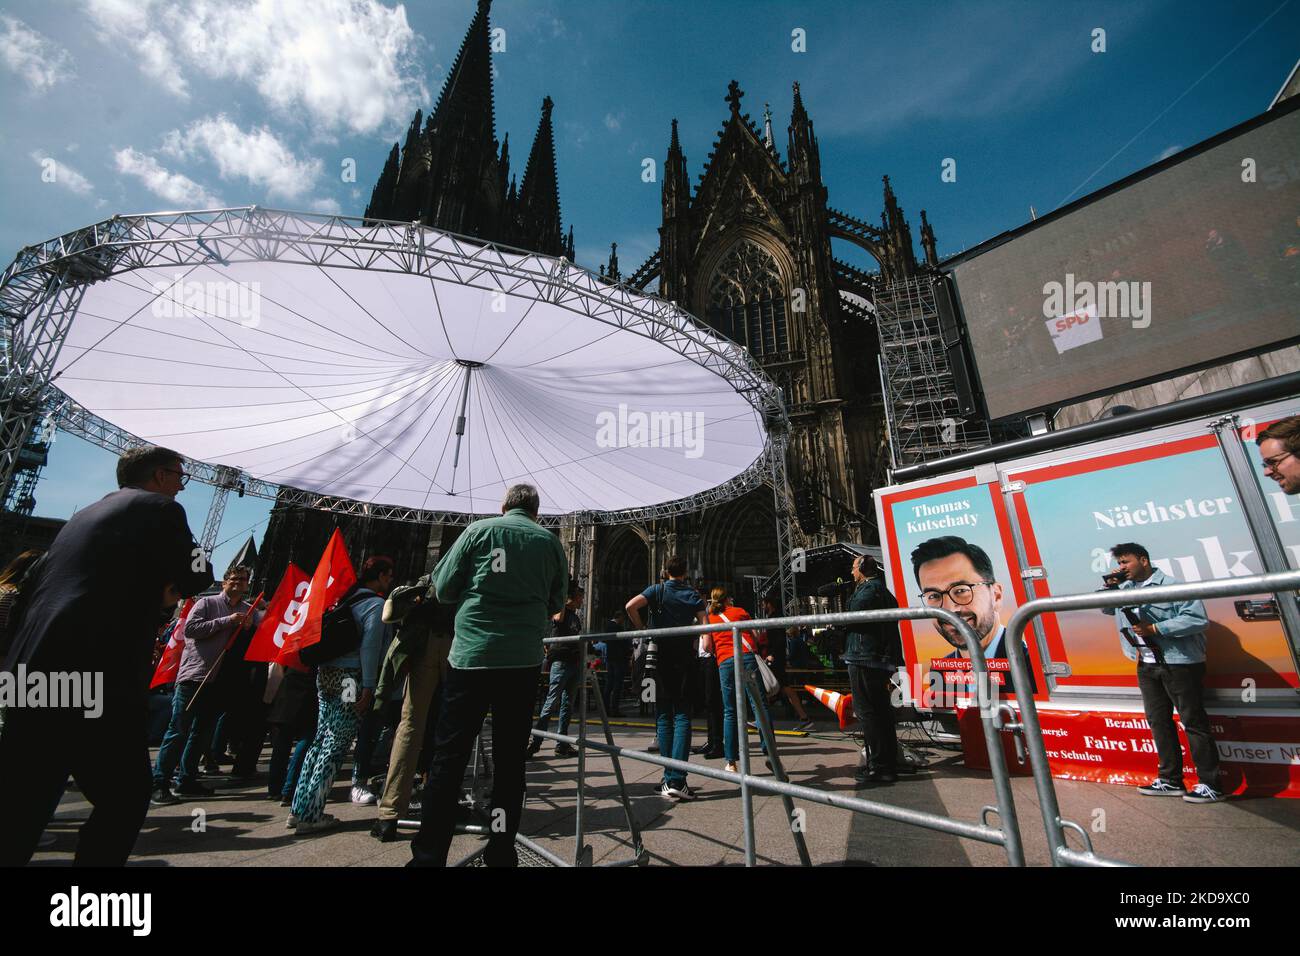 Les partisans du SPD sont vus à Roncalliplatz à Cologne, Allemagne sur 13 mai pendant la campagne électorale du parti SPD 2022 (photo de Ying Tang/NurPhoto) Banque D'Images